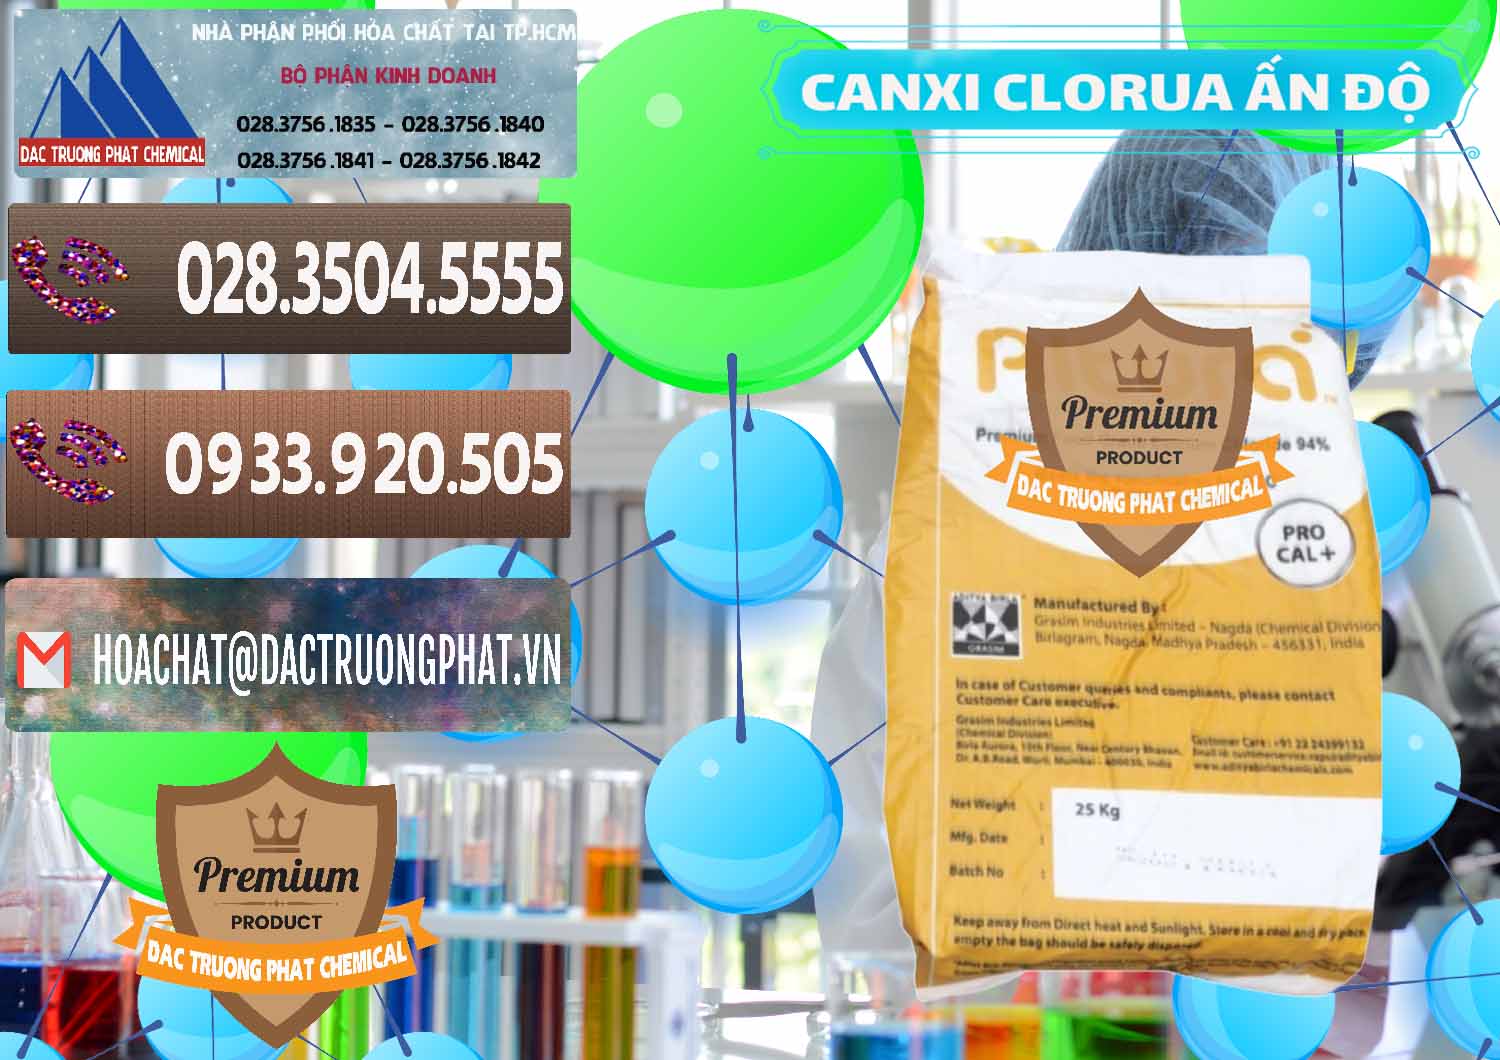 Chuyên cung ứng - bán CaCl2 – Canxi Clorua Food Grade Altura Aditya Birla Grasim Ấn Độ India - 0436 - Cty kinh doanh & phân phối hóa chất tại TP.HCM - hoachatviet.net